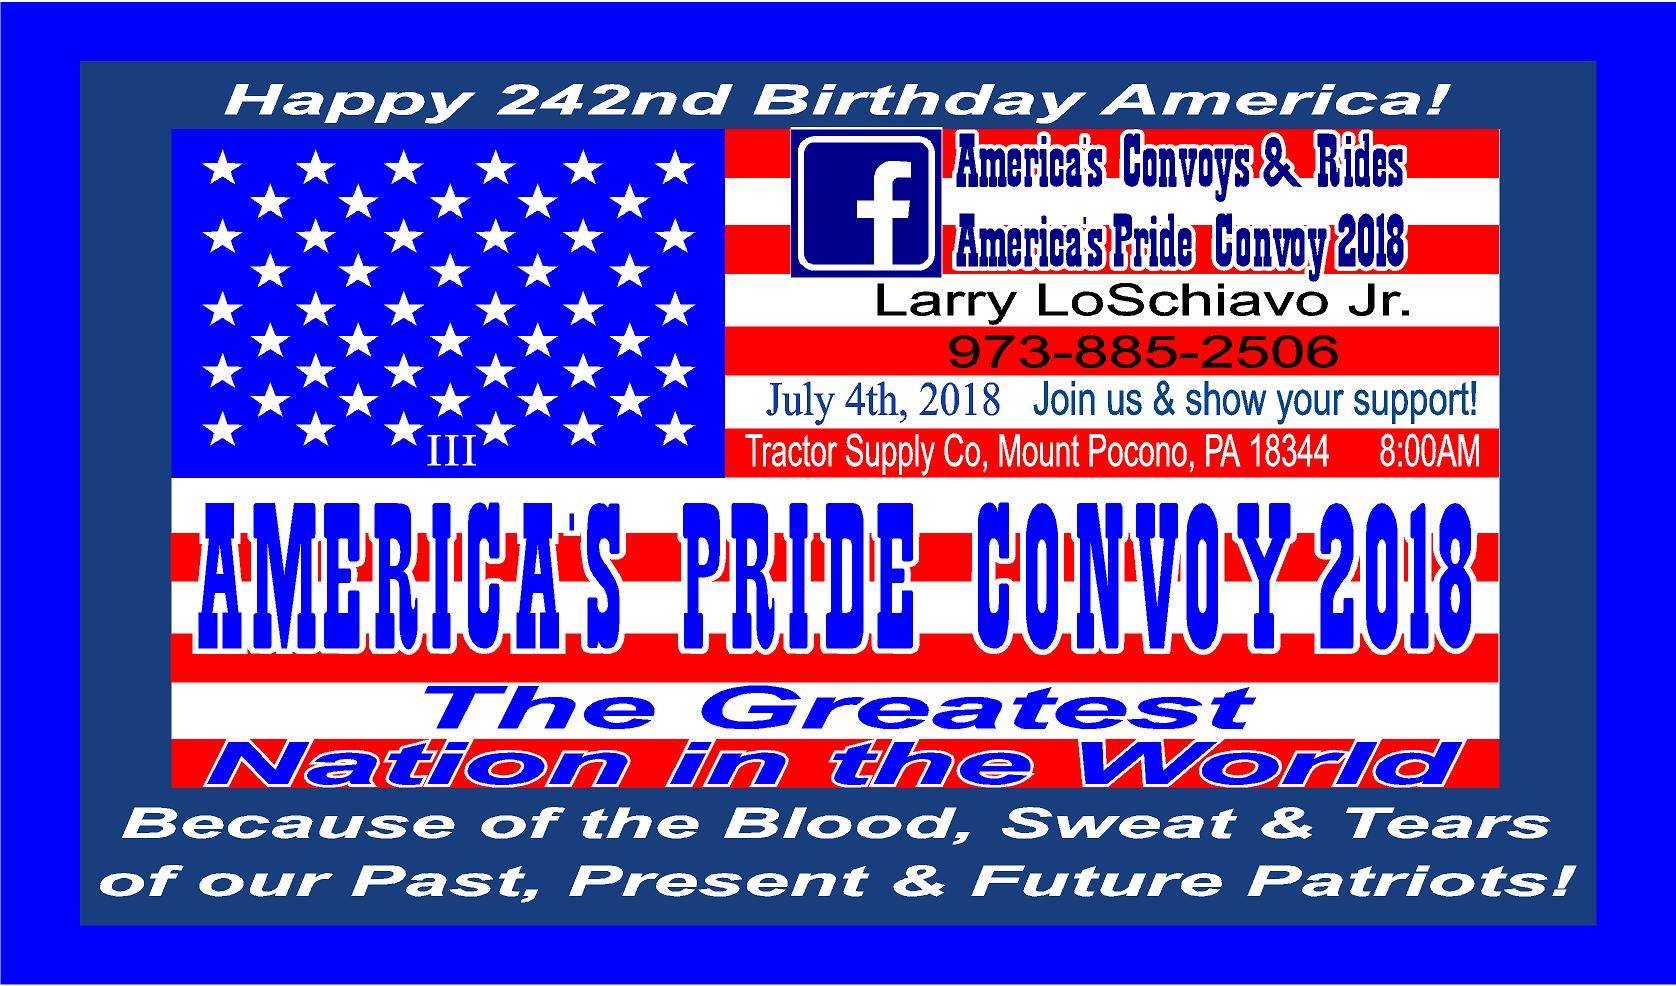 America's Pride Convoy 2018